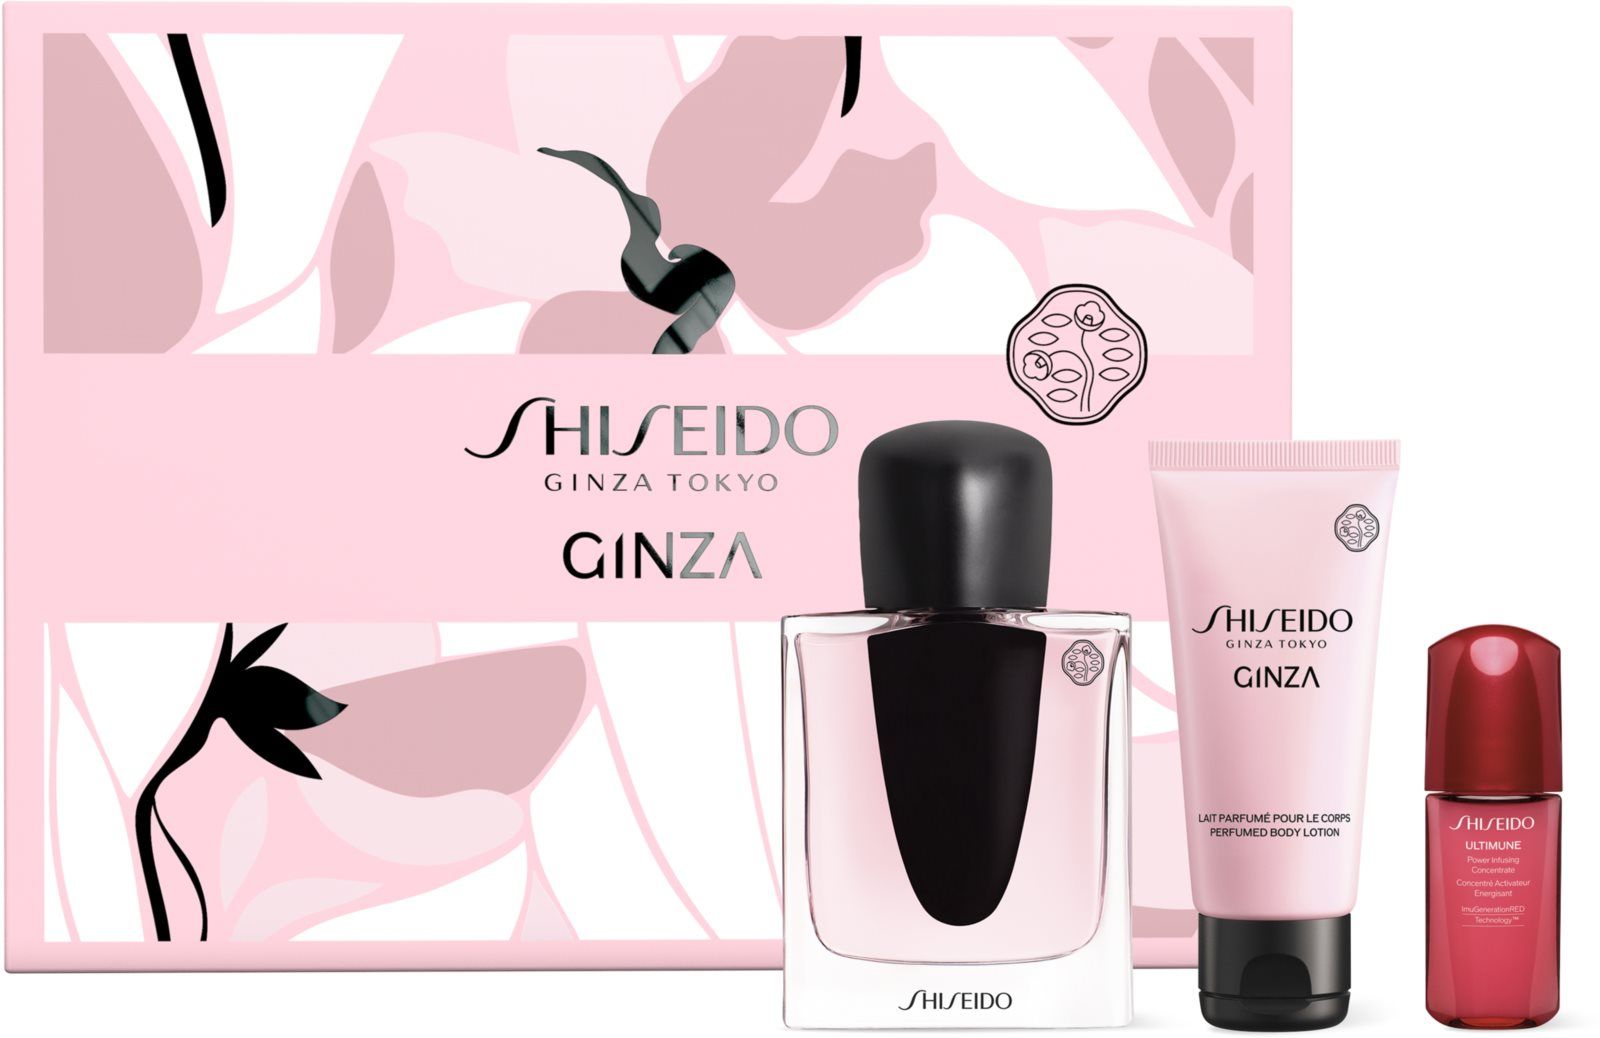 Shiseido ginza купить